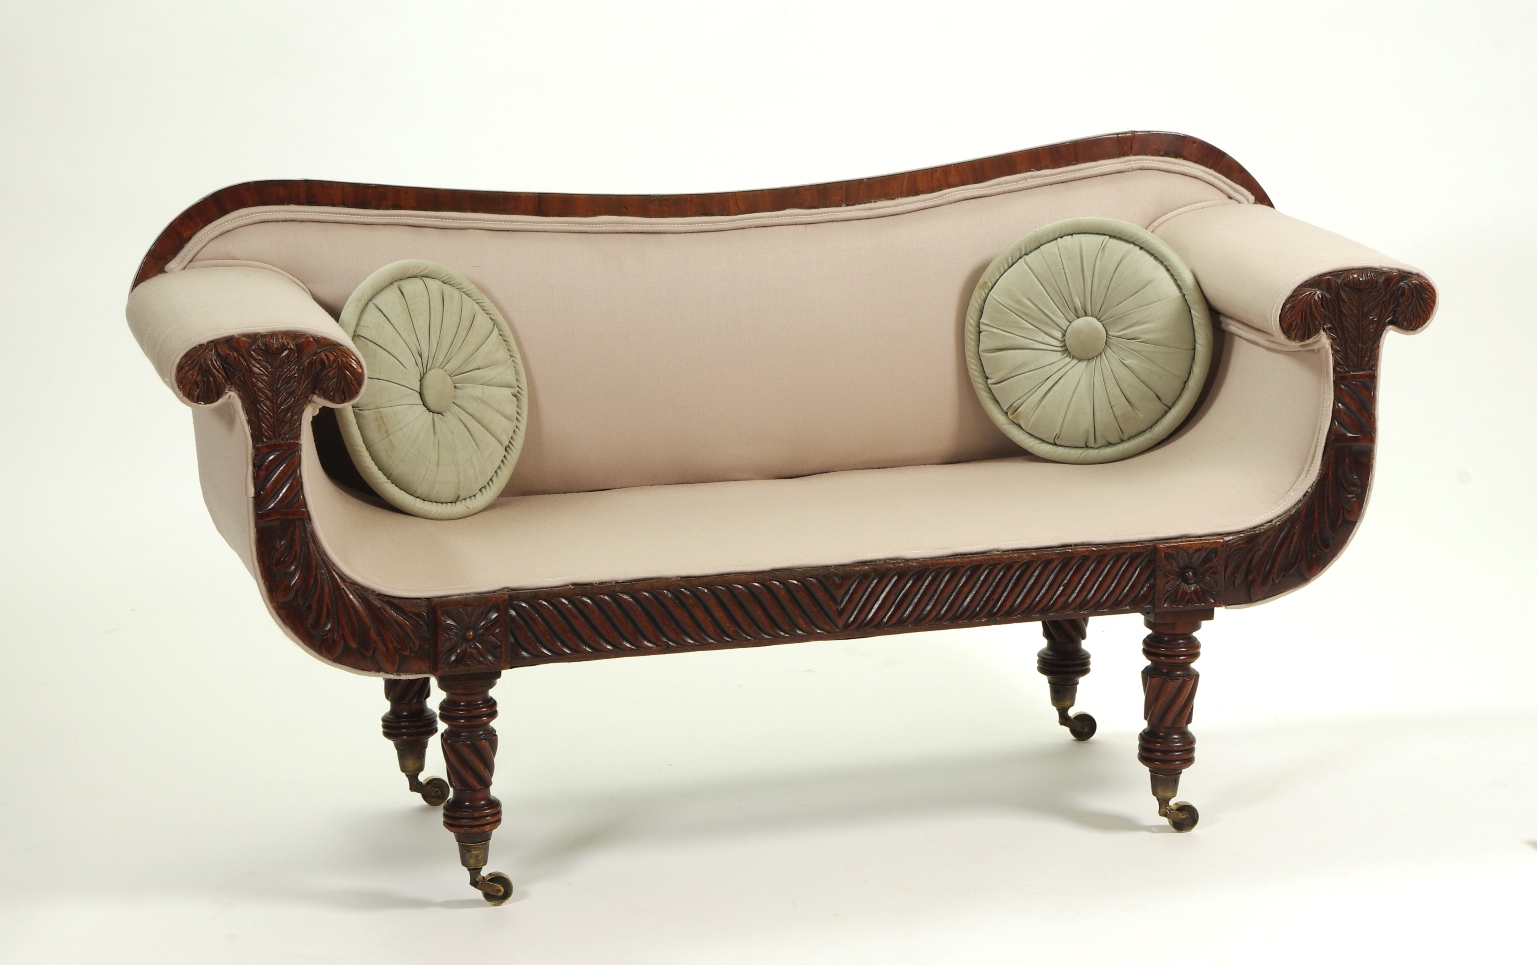 Regency Mahogany Child's Sofa, c. 1820